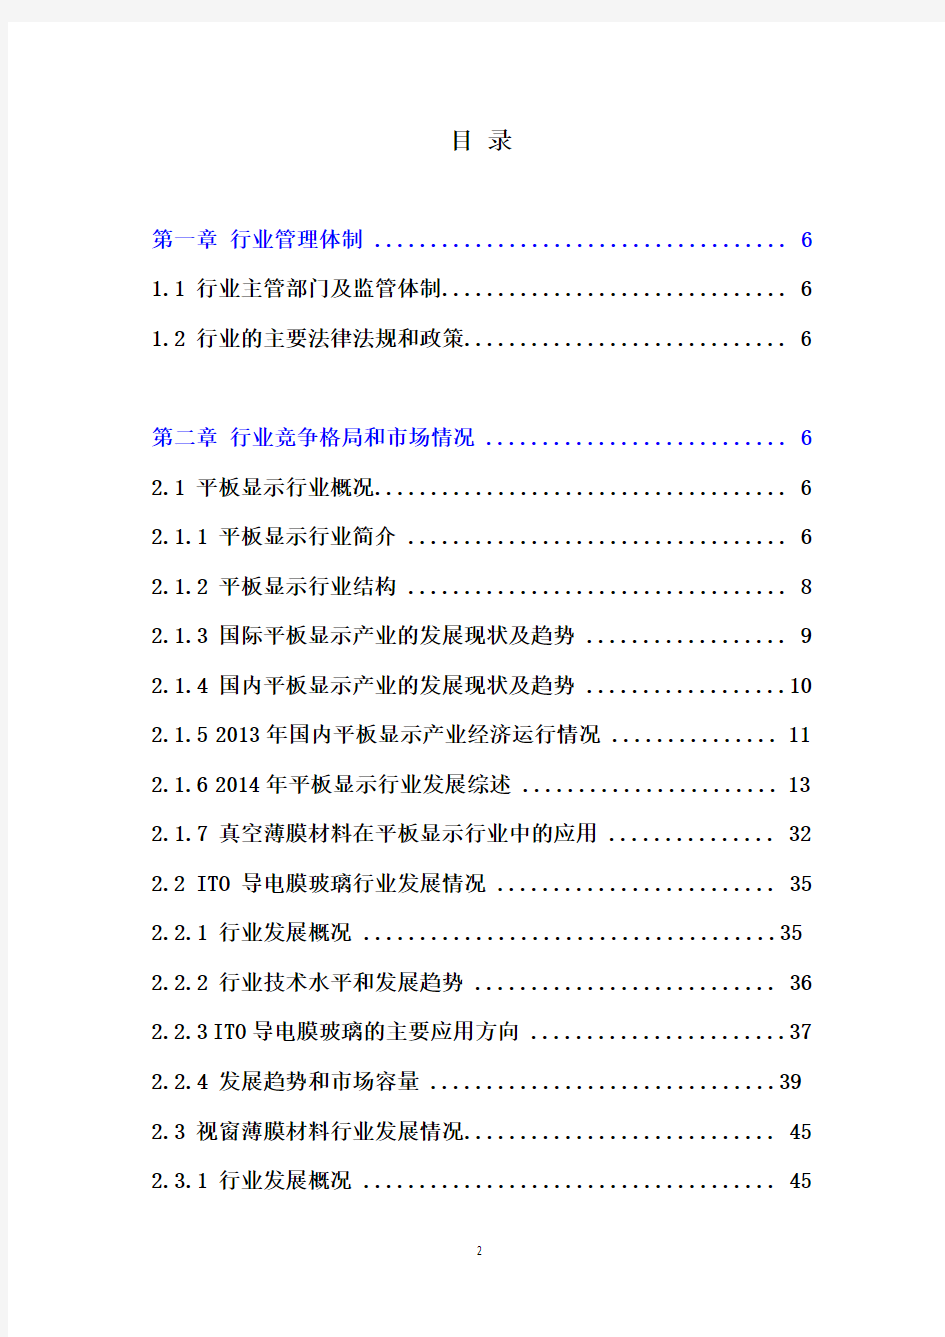 (推荐精品)2016年中国平板显示行业分析报告